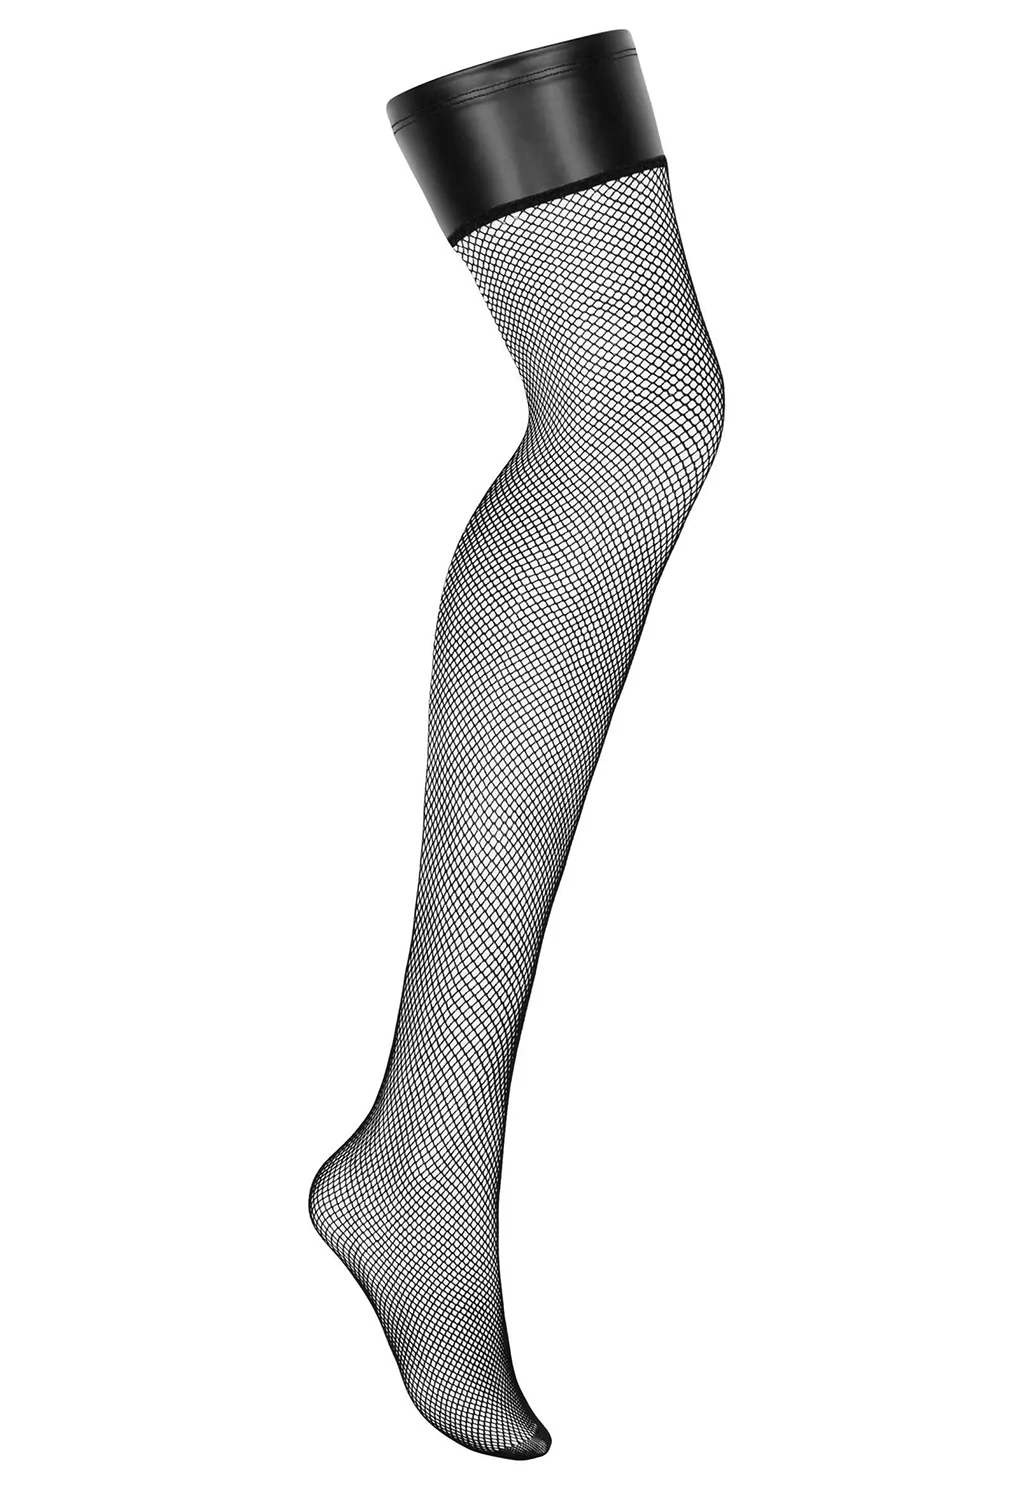 Darkessia wetlook fishnet stockings